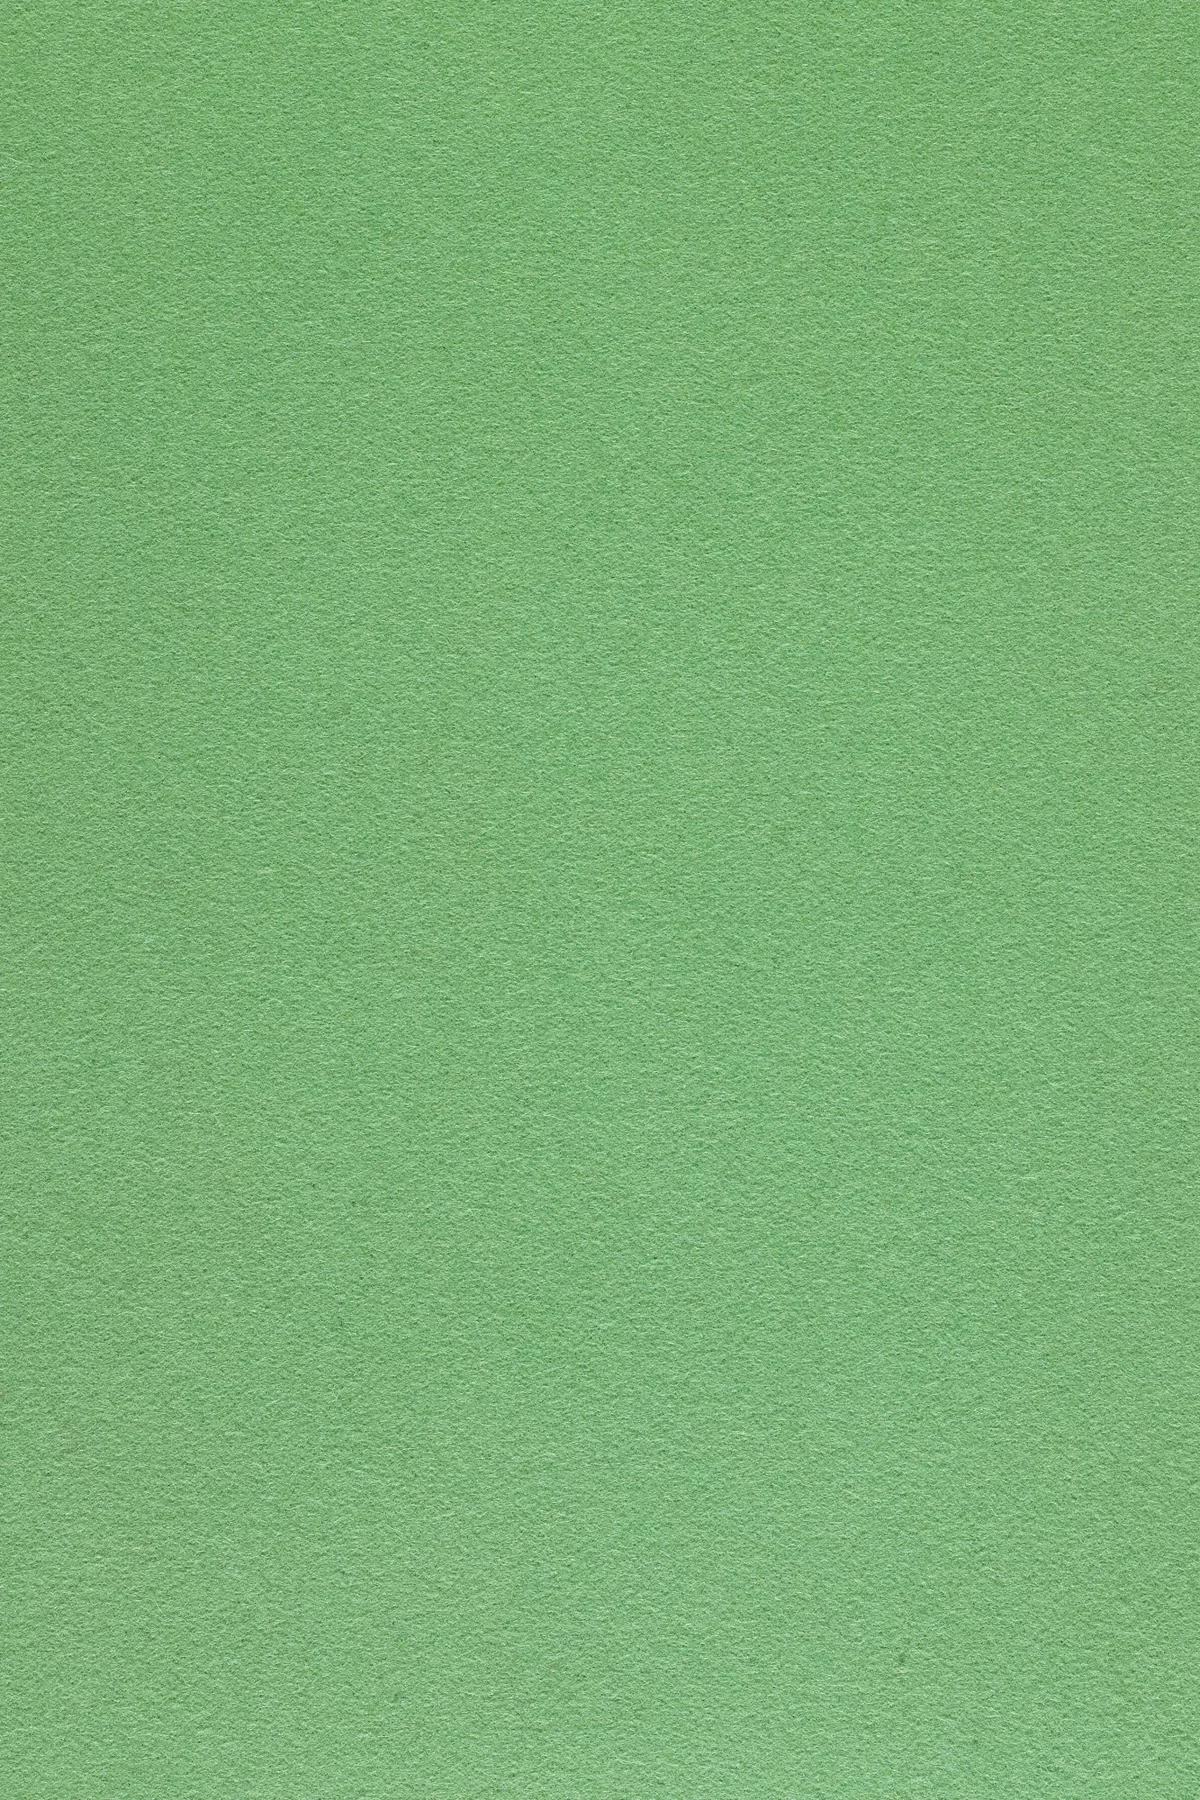 Fabric sample Divina 3 966 green